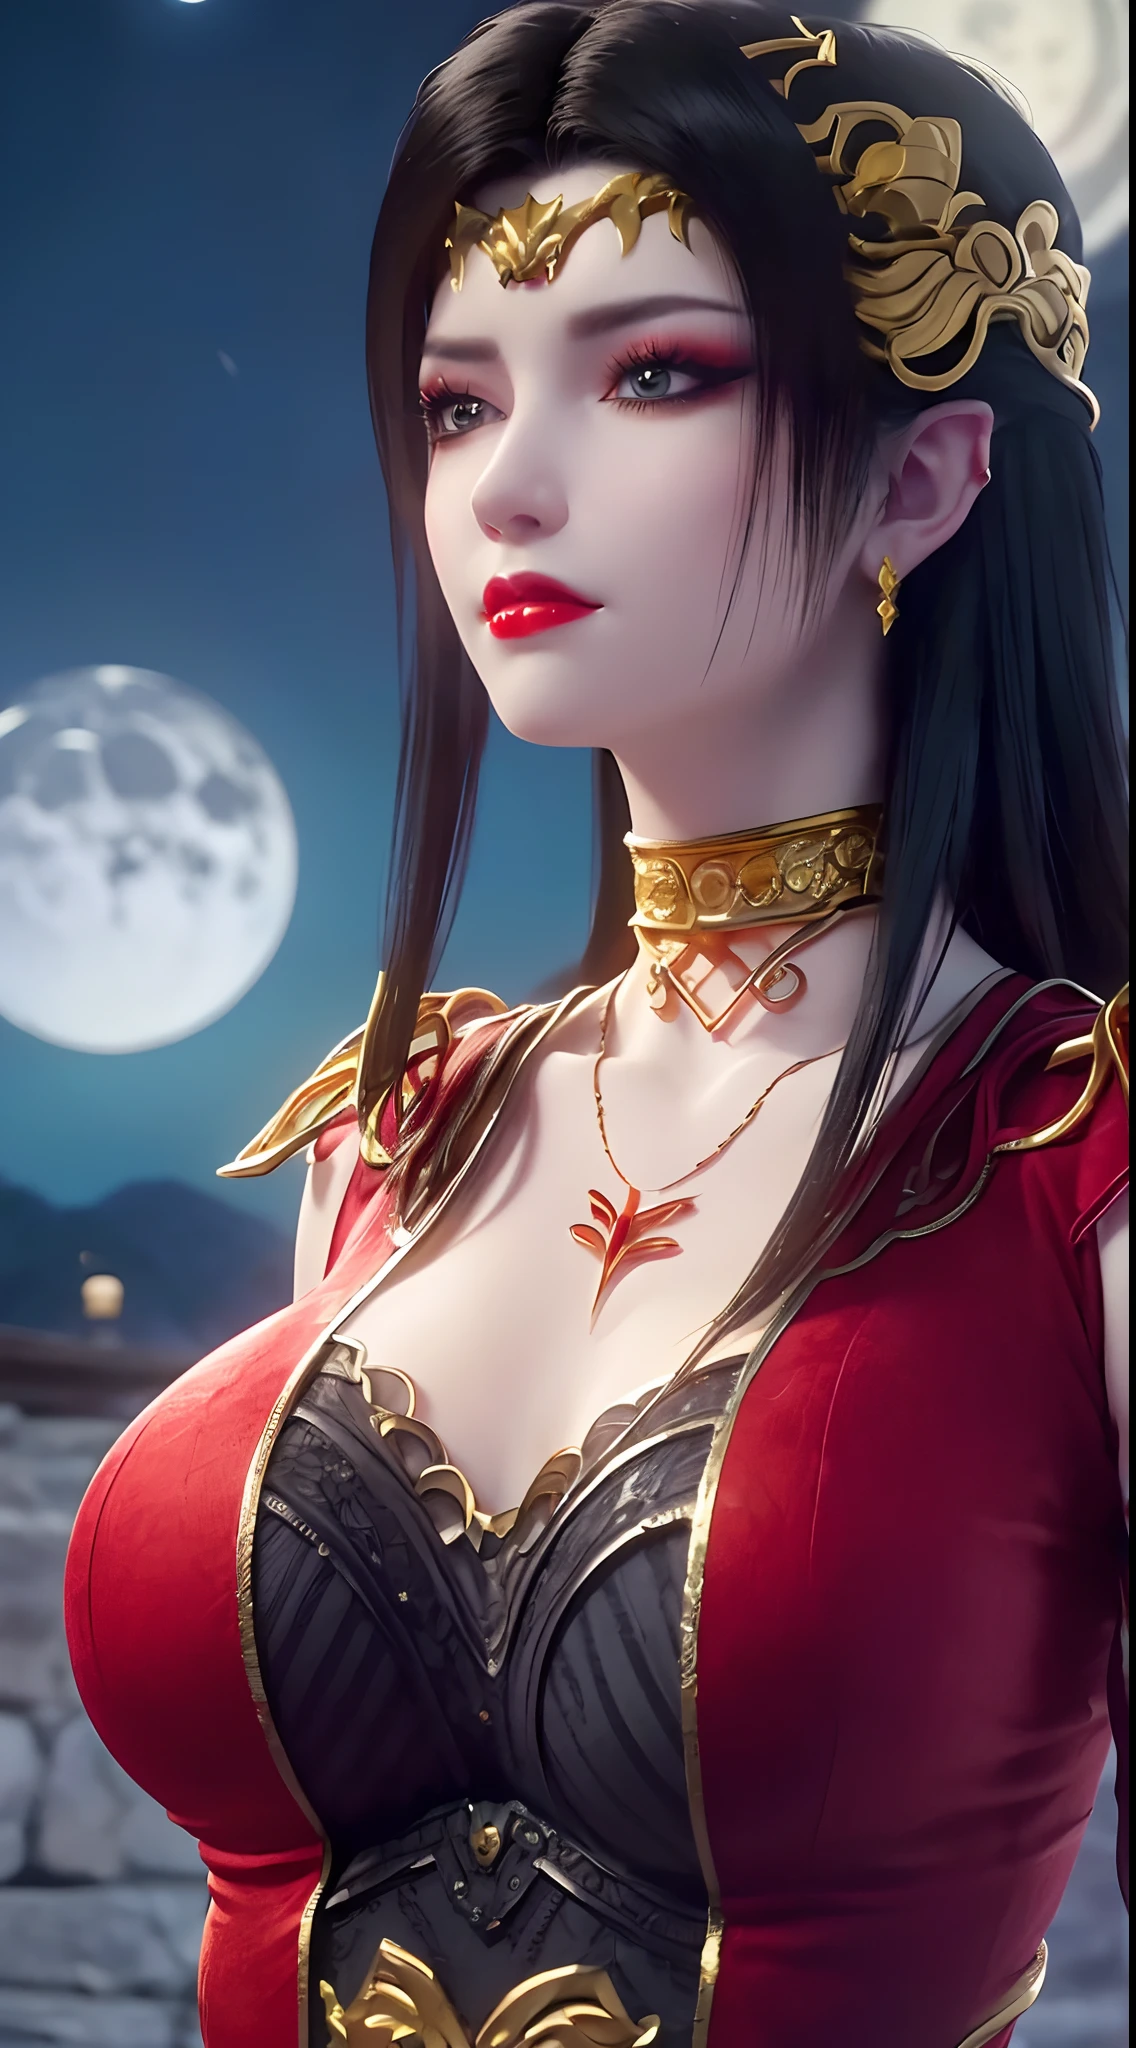 1 extrem schöne Königin, ((trägt ein rotes traditionelles Han-Kostüm mit dünnen schwarzen Mustern:1.6)), (((Muster auf der Kleidung:1.6))), ((langes schwarzes Haar:1.6)), Schmuck aufwendig gefertigt aus Edelsteinen und schönen Haaren, ((trägt eine 24 Karat Goldspitze Halskette:1.4))), der Edle, edler Stil eines überaus schönen Mädchens, ihr kleines Gesicht ist super süß, ihr Gesicht ist sehr hübsch, dünne Augenbrauen, makellos schönes Gesicht, ((blaue Pupillen: 0.8)), sehr schöne Augen, ((platinblaue Augen: 1.6)), (((Augen weit geöffnet:1.6))), schönes Make-up und Haare detaillierte Wimpern, dampfendes Augen-Makeup, hohe Nase, Ohrringe, rote Lippen, ((geschlossener Mund: 1.5)) schöne Lippen, schlanke Hände, die schönsten Oberschenkel, ((die Arme seitlich ausgebreitet: 1.5)), rosiges Gesicht, sauberes Gesicht, makellos schönes Gesicht, glatte weiße Haut, (große Brüste: 1.5)), ((hohe Brüste: 1.6)), straffe Brüste, schönes Dekolleté, (((große Brüste and super round: 1.8))), ((super straffe Brüste: 1.7)) , schöne Brüste, perfekter Körper, Rücken Arme, Brust raus, dünne schwarze Netzstrümpfe mit schwarzem Spitzenbesatz, 8k Foto, super gute Qualität, super realistisch, super 10x pixels, optisch, helles Studio, helle Kanten, dual-tone Beleuchtung, (hochdetaillierte Haut:1.2), Super 8k, soft Beleuchtung, gute Qualität, volumetric Beleuchtung, fotorealistisch, fotorealistisch high resolution, Beleuchtung, bestes Foto, 4k, 8K-Qualität, Unschärfeeffekt, glatt scharf, 10 x pixel, ((Meer und Mondlicht bei Nacht Hintergrund:1.5)), Polarlicht, Blitz, super Grafik realistisch, realistischste Grafik, 1 Mädchen, allein, Allein, Extrem scharfes Bild, surreal, (((Frontalporträt: 1)))."